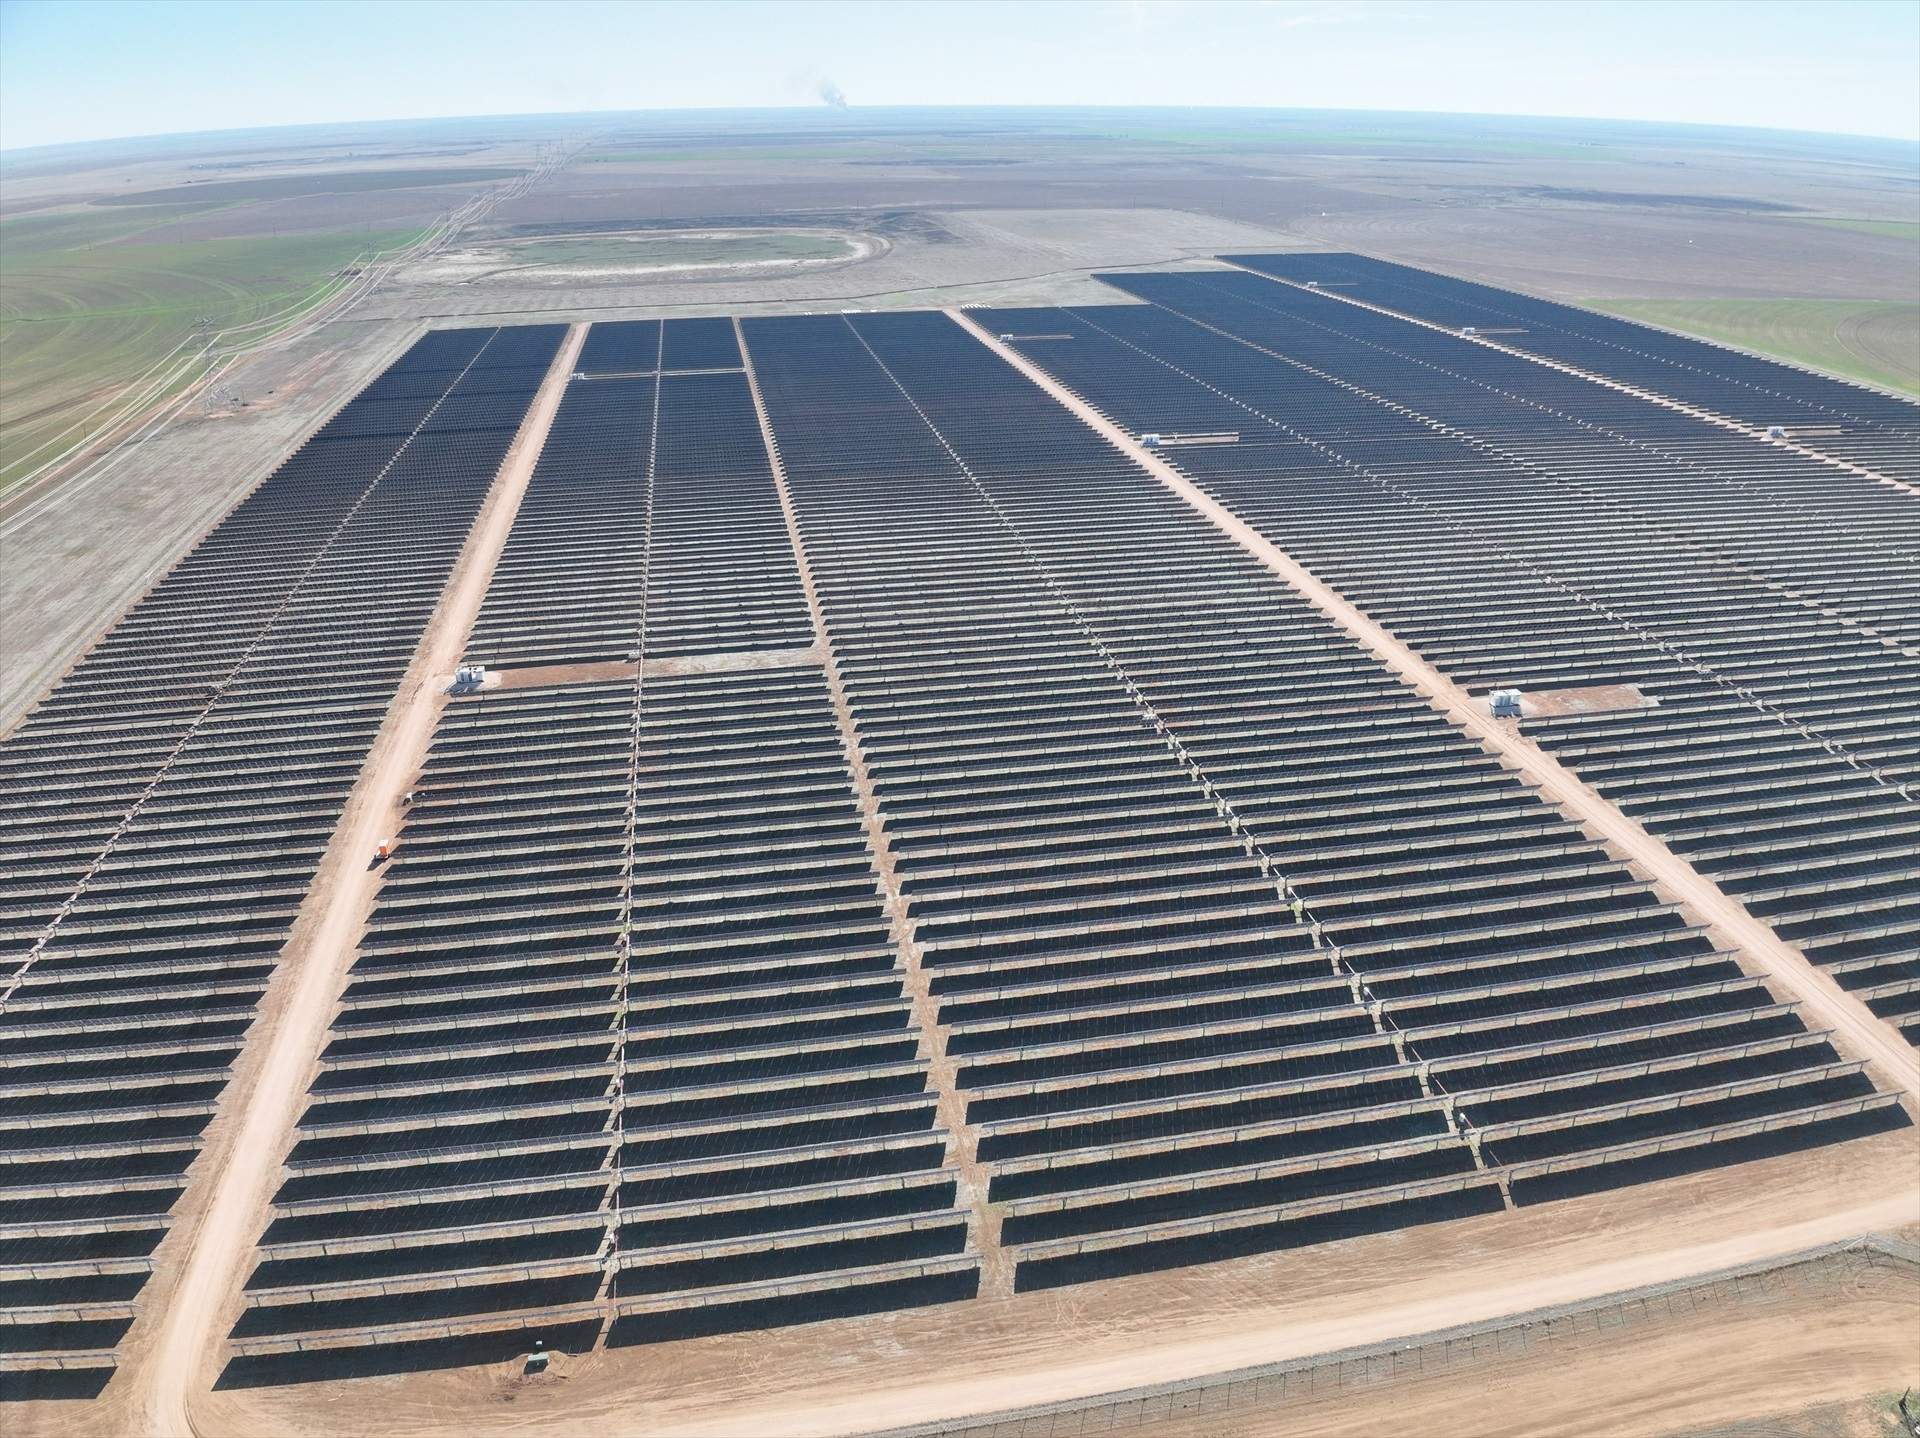 Repsol finalitza la seva planta fotovoltaica més gran als Estats Units